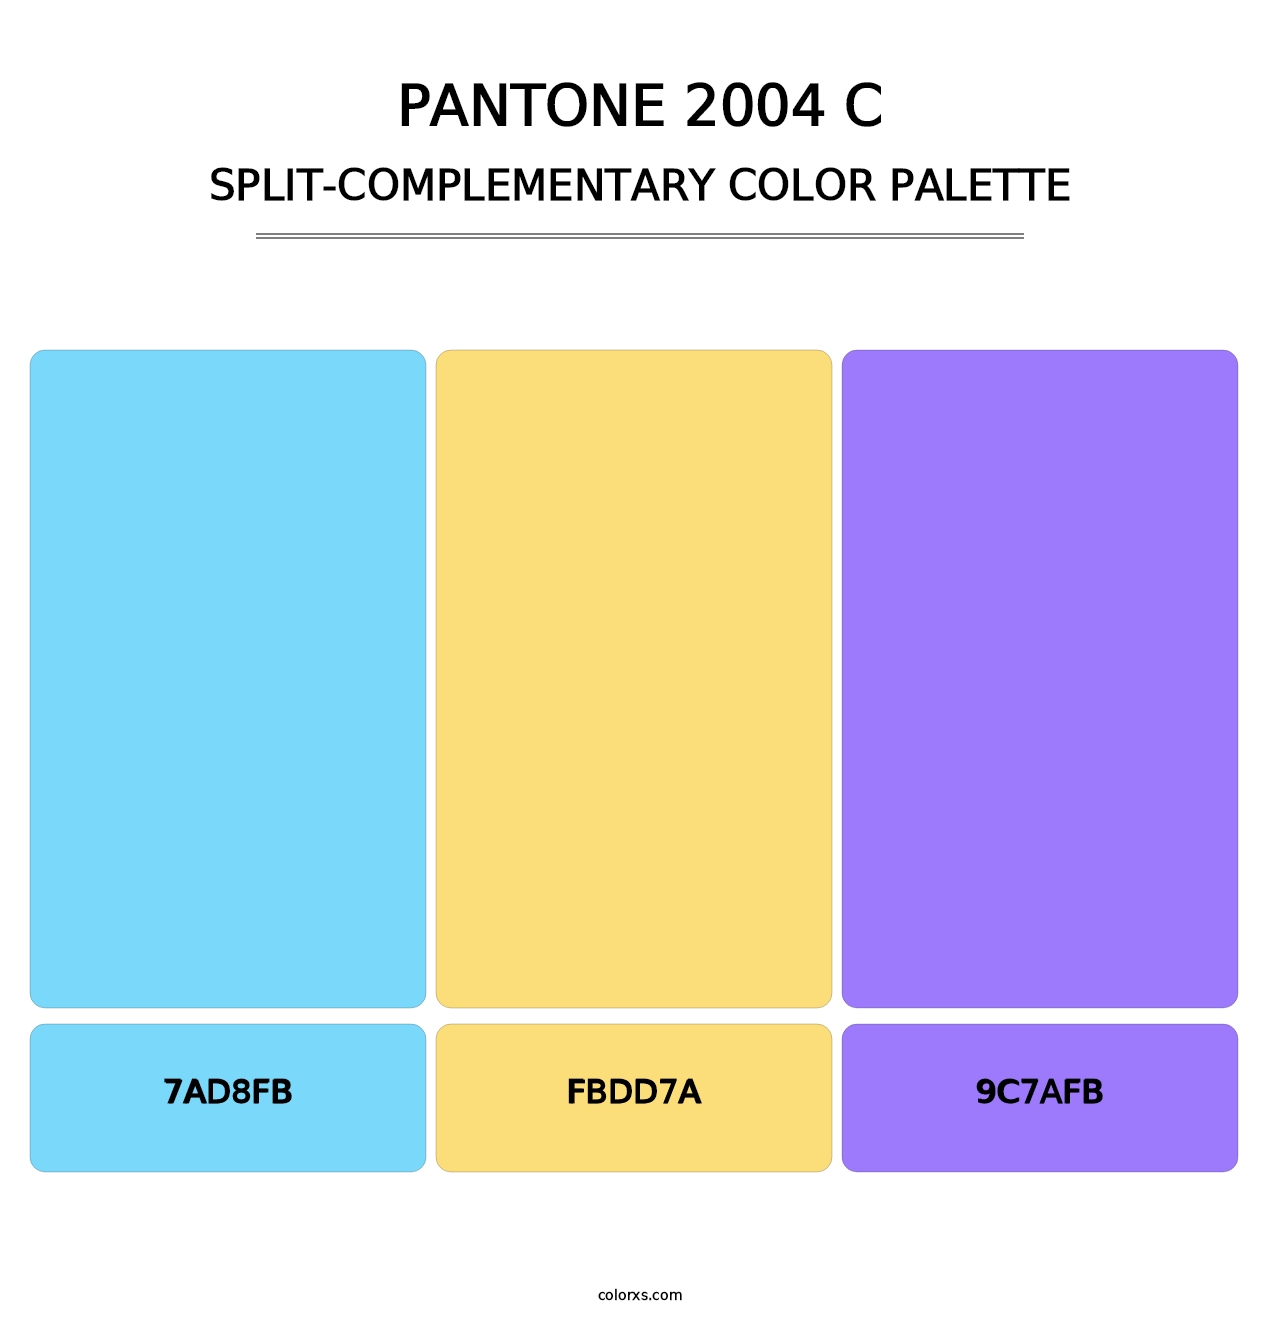 PANTONE 2004 C - Split-Complementary Color Palette